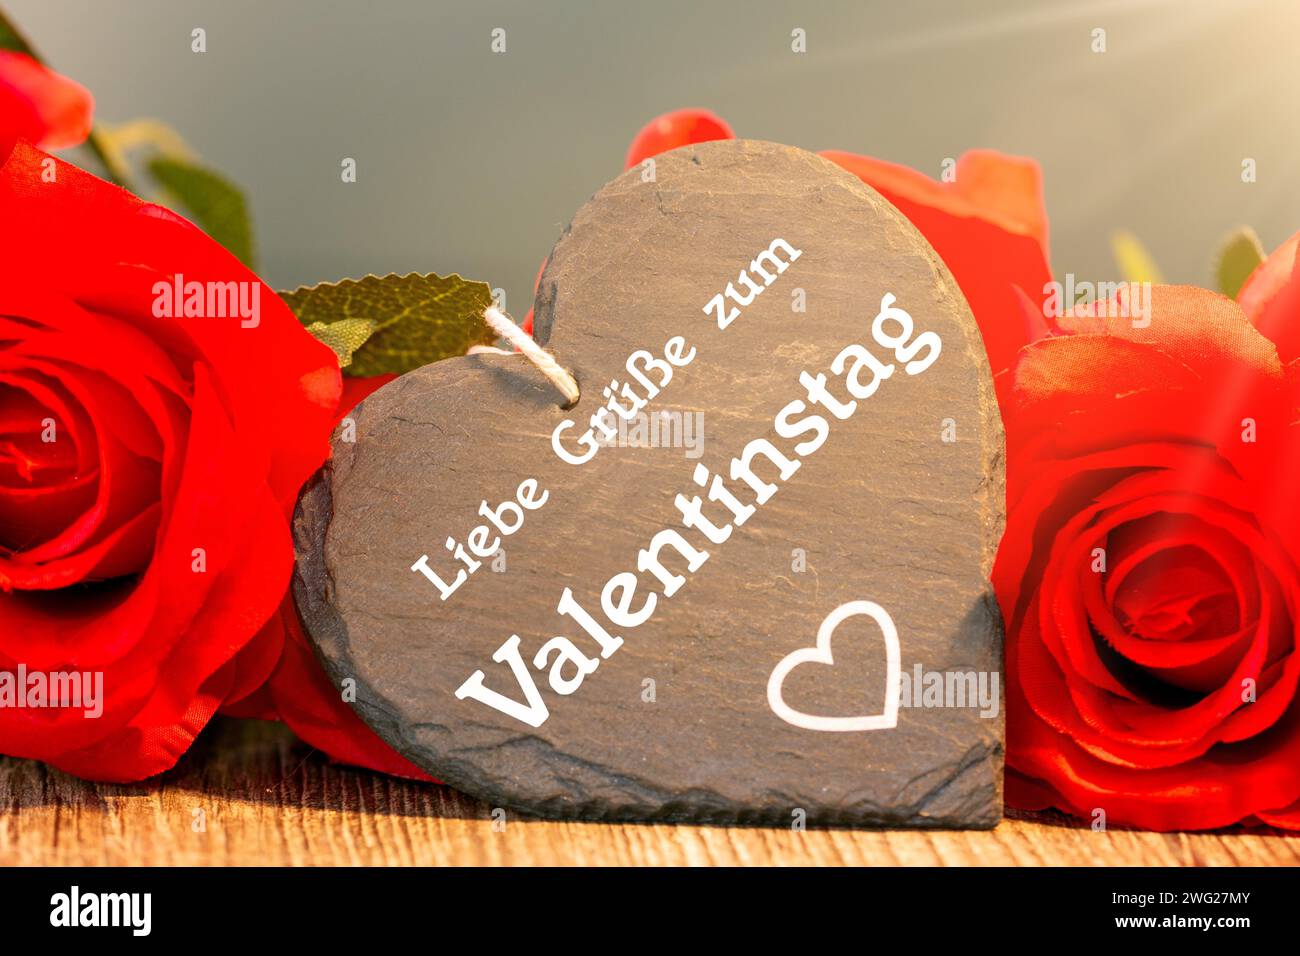 Salutations pour la Saint-Valentin : des roses et un coeur avec l'inscription allemande LIEBE GRÜSSE ZUM VALENTINSTAG (salutations d'amour pour la Saint-Valentin) Banque D'Images